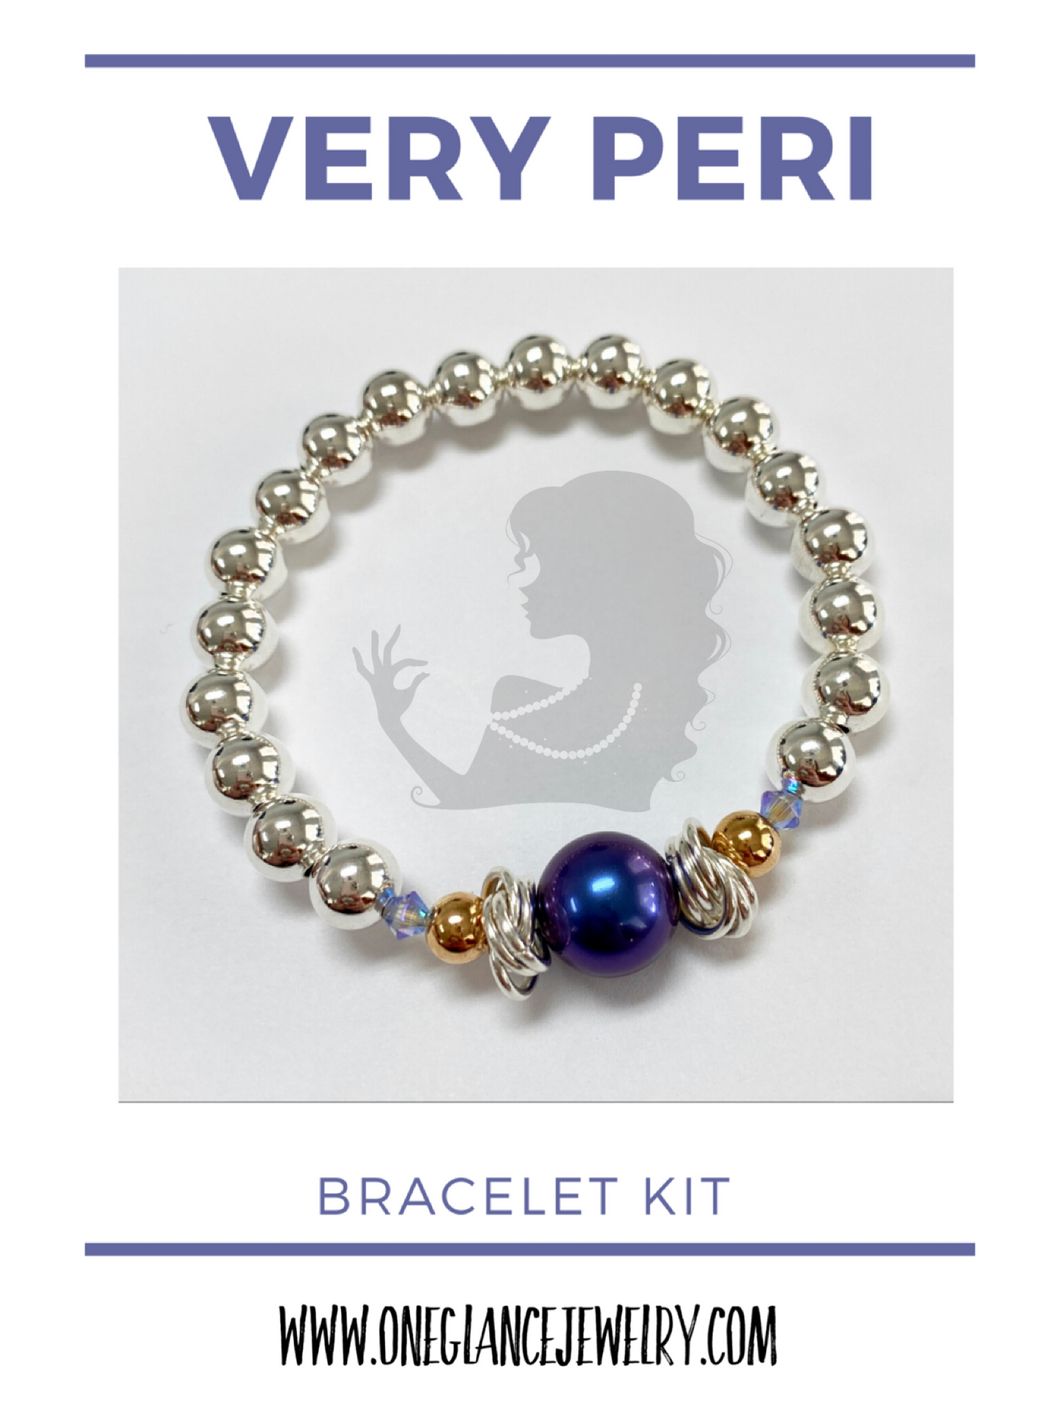 Very Peri Bracelet Kit